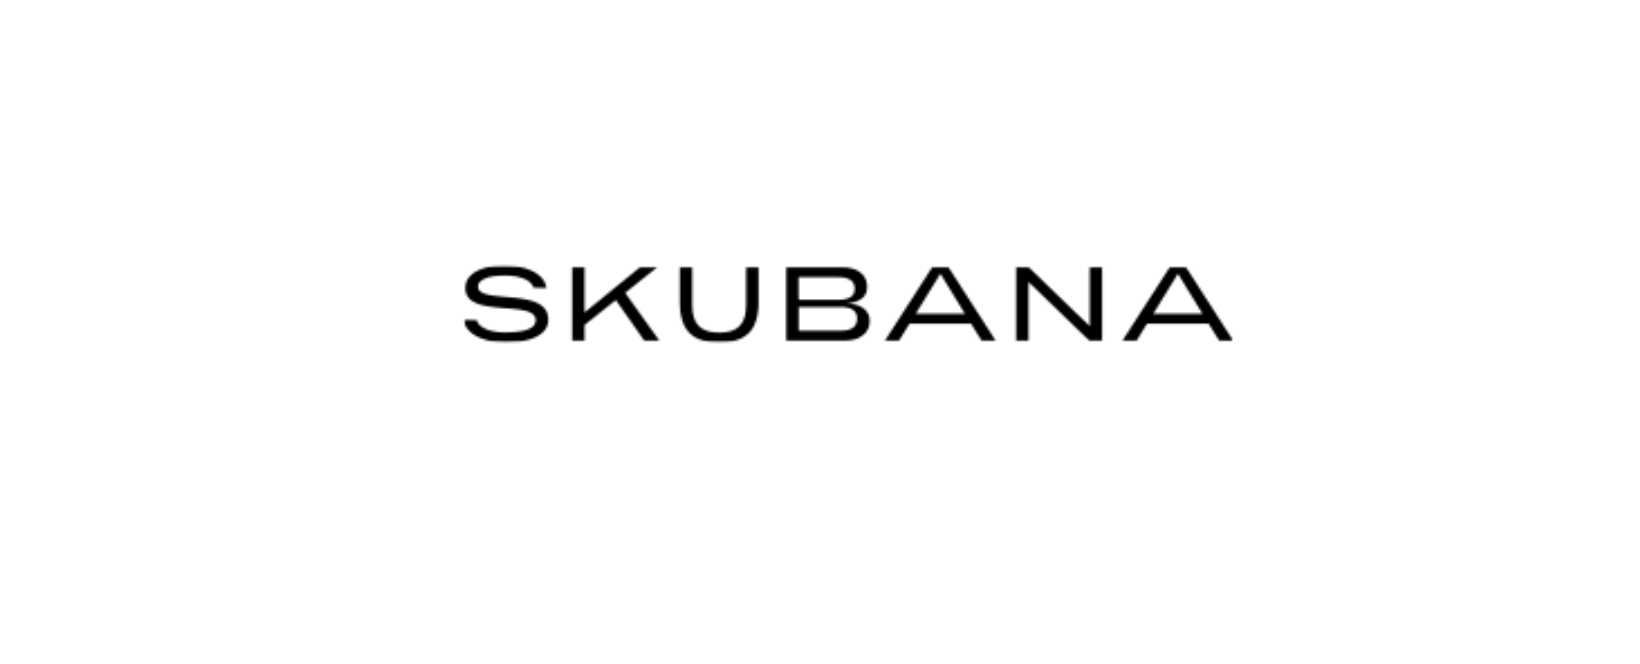 Skubana Discount Code 2022